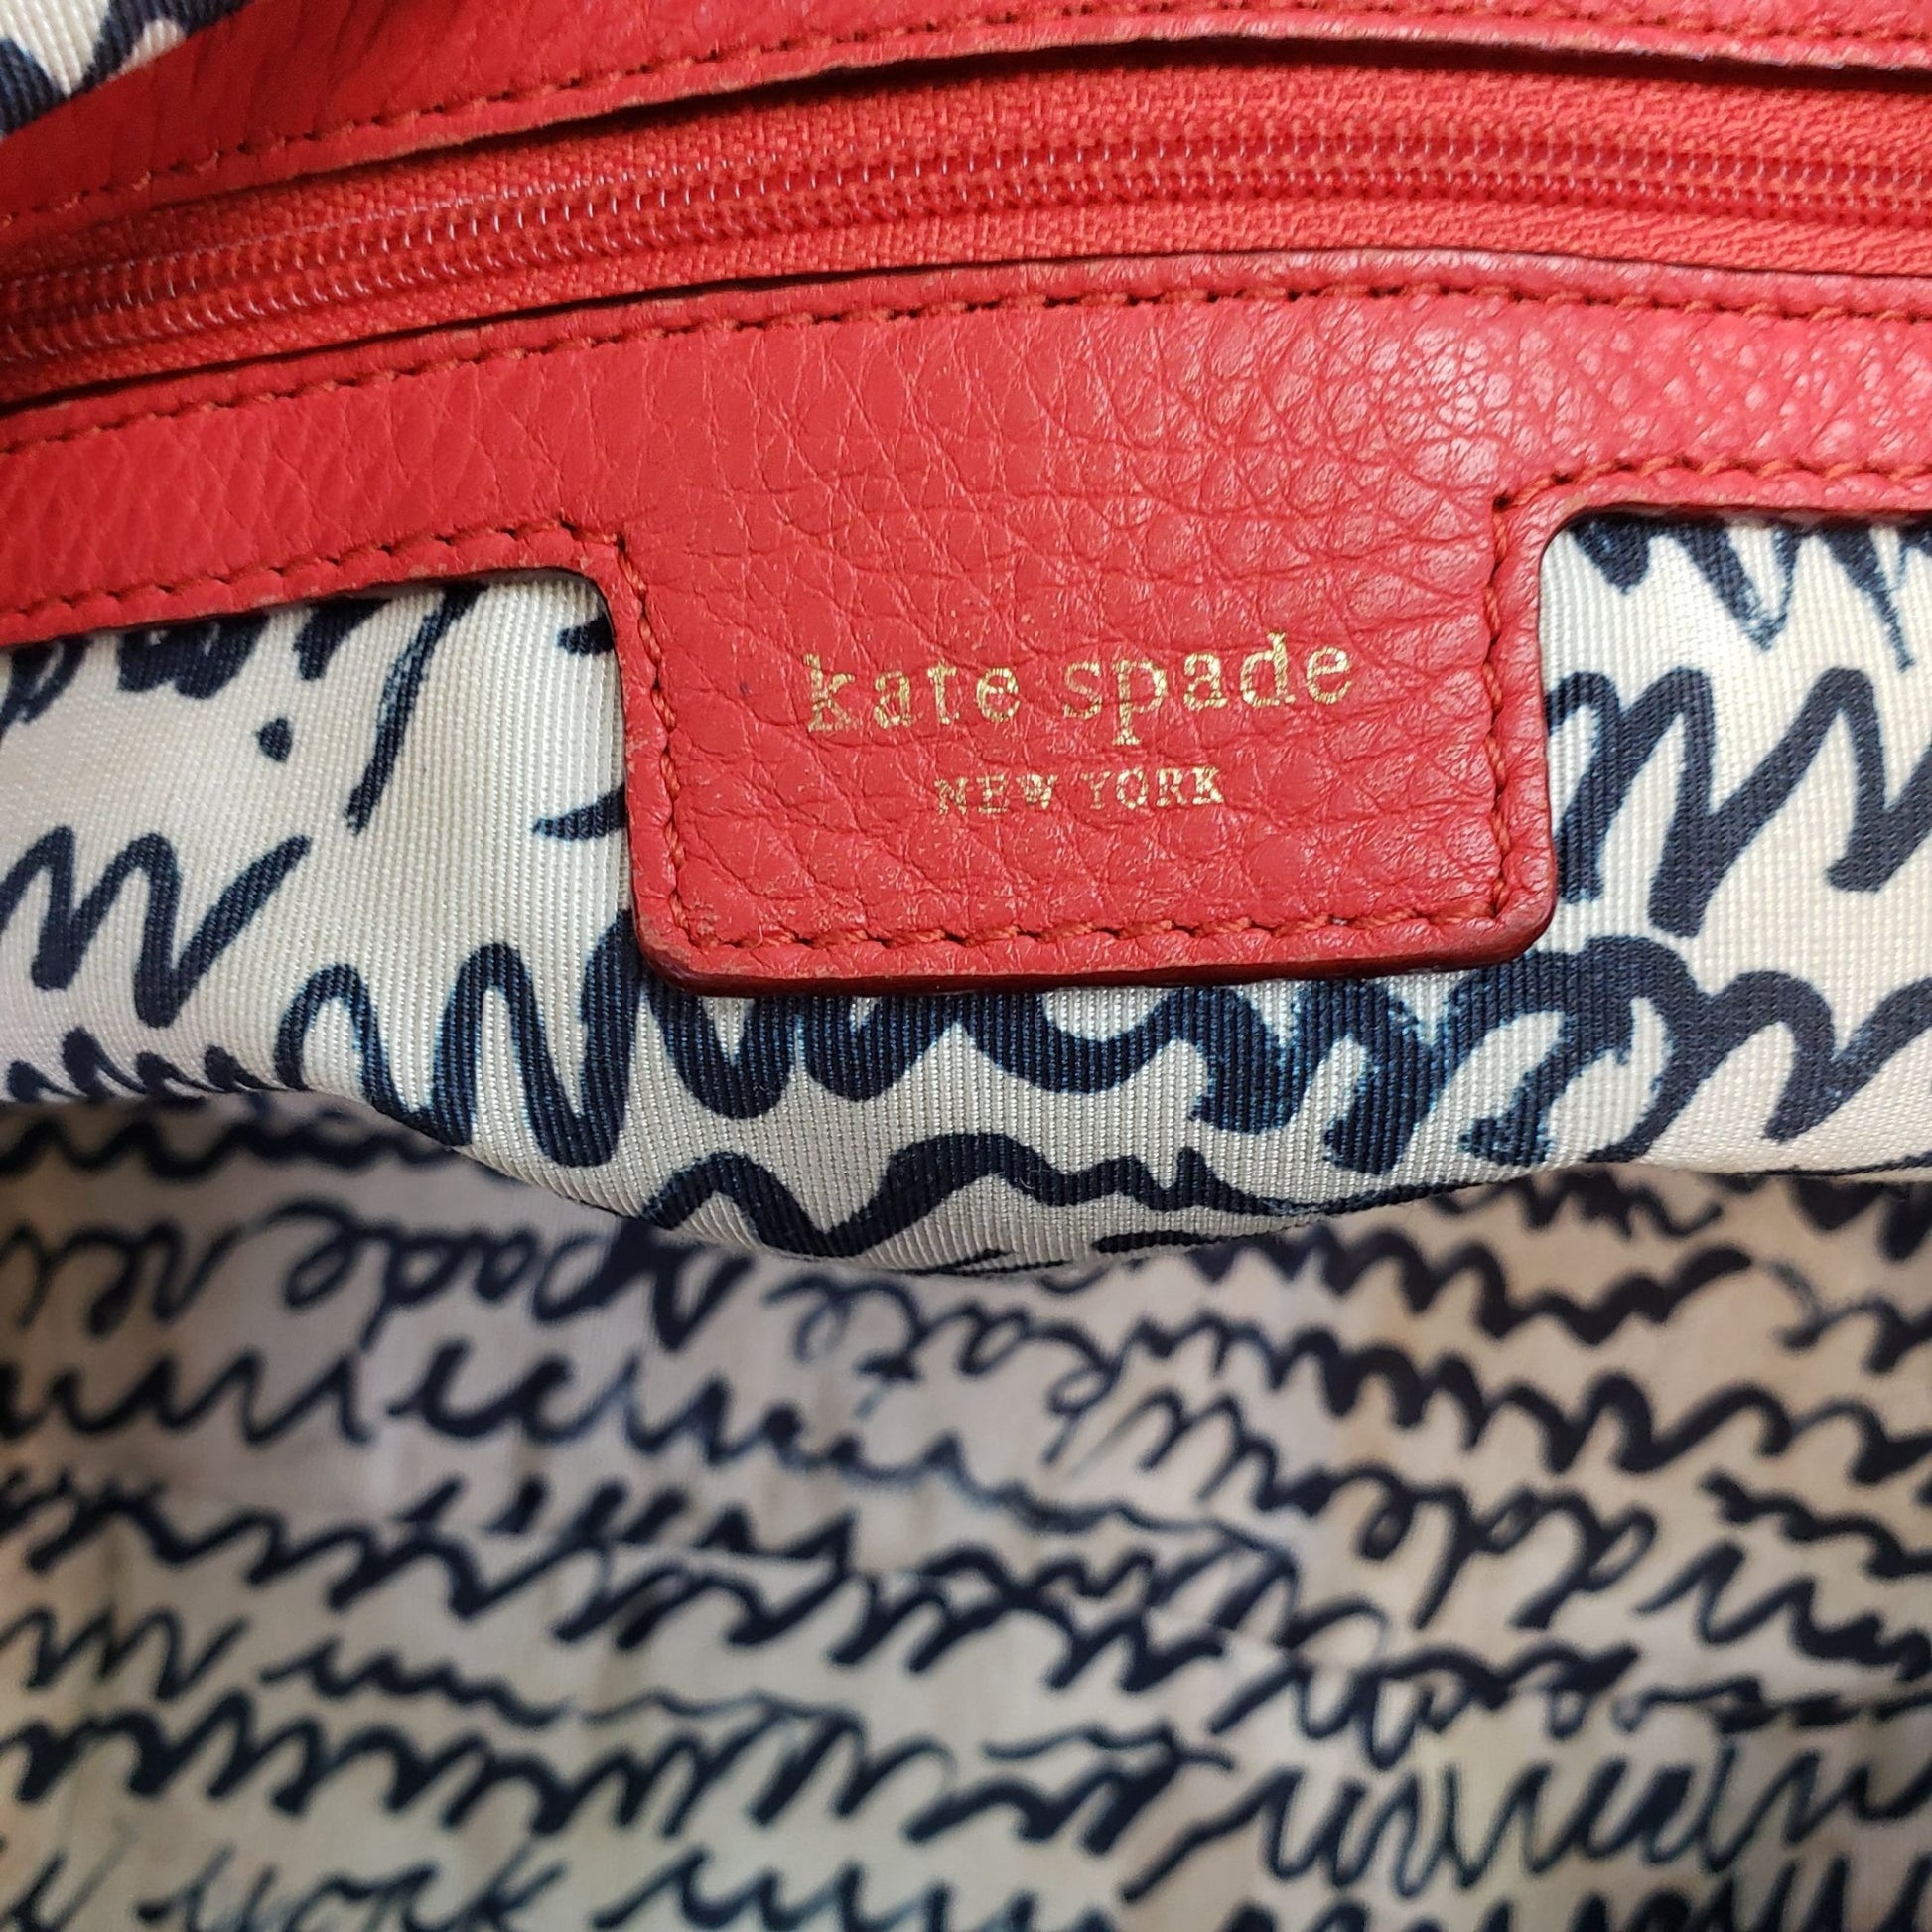 Fake Kate Spade Bag 